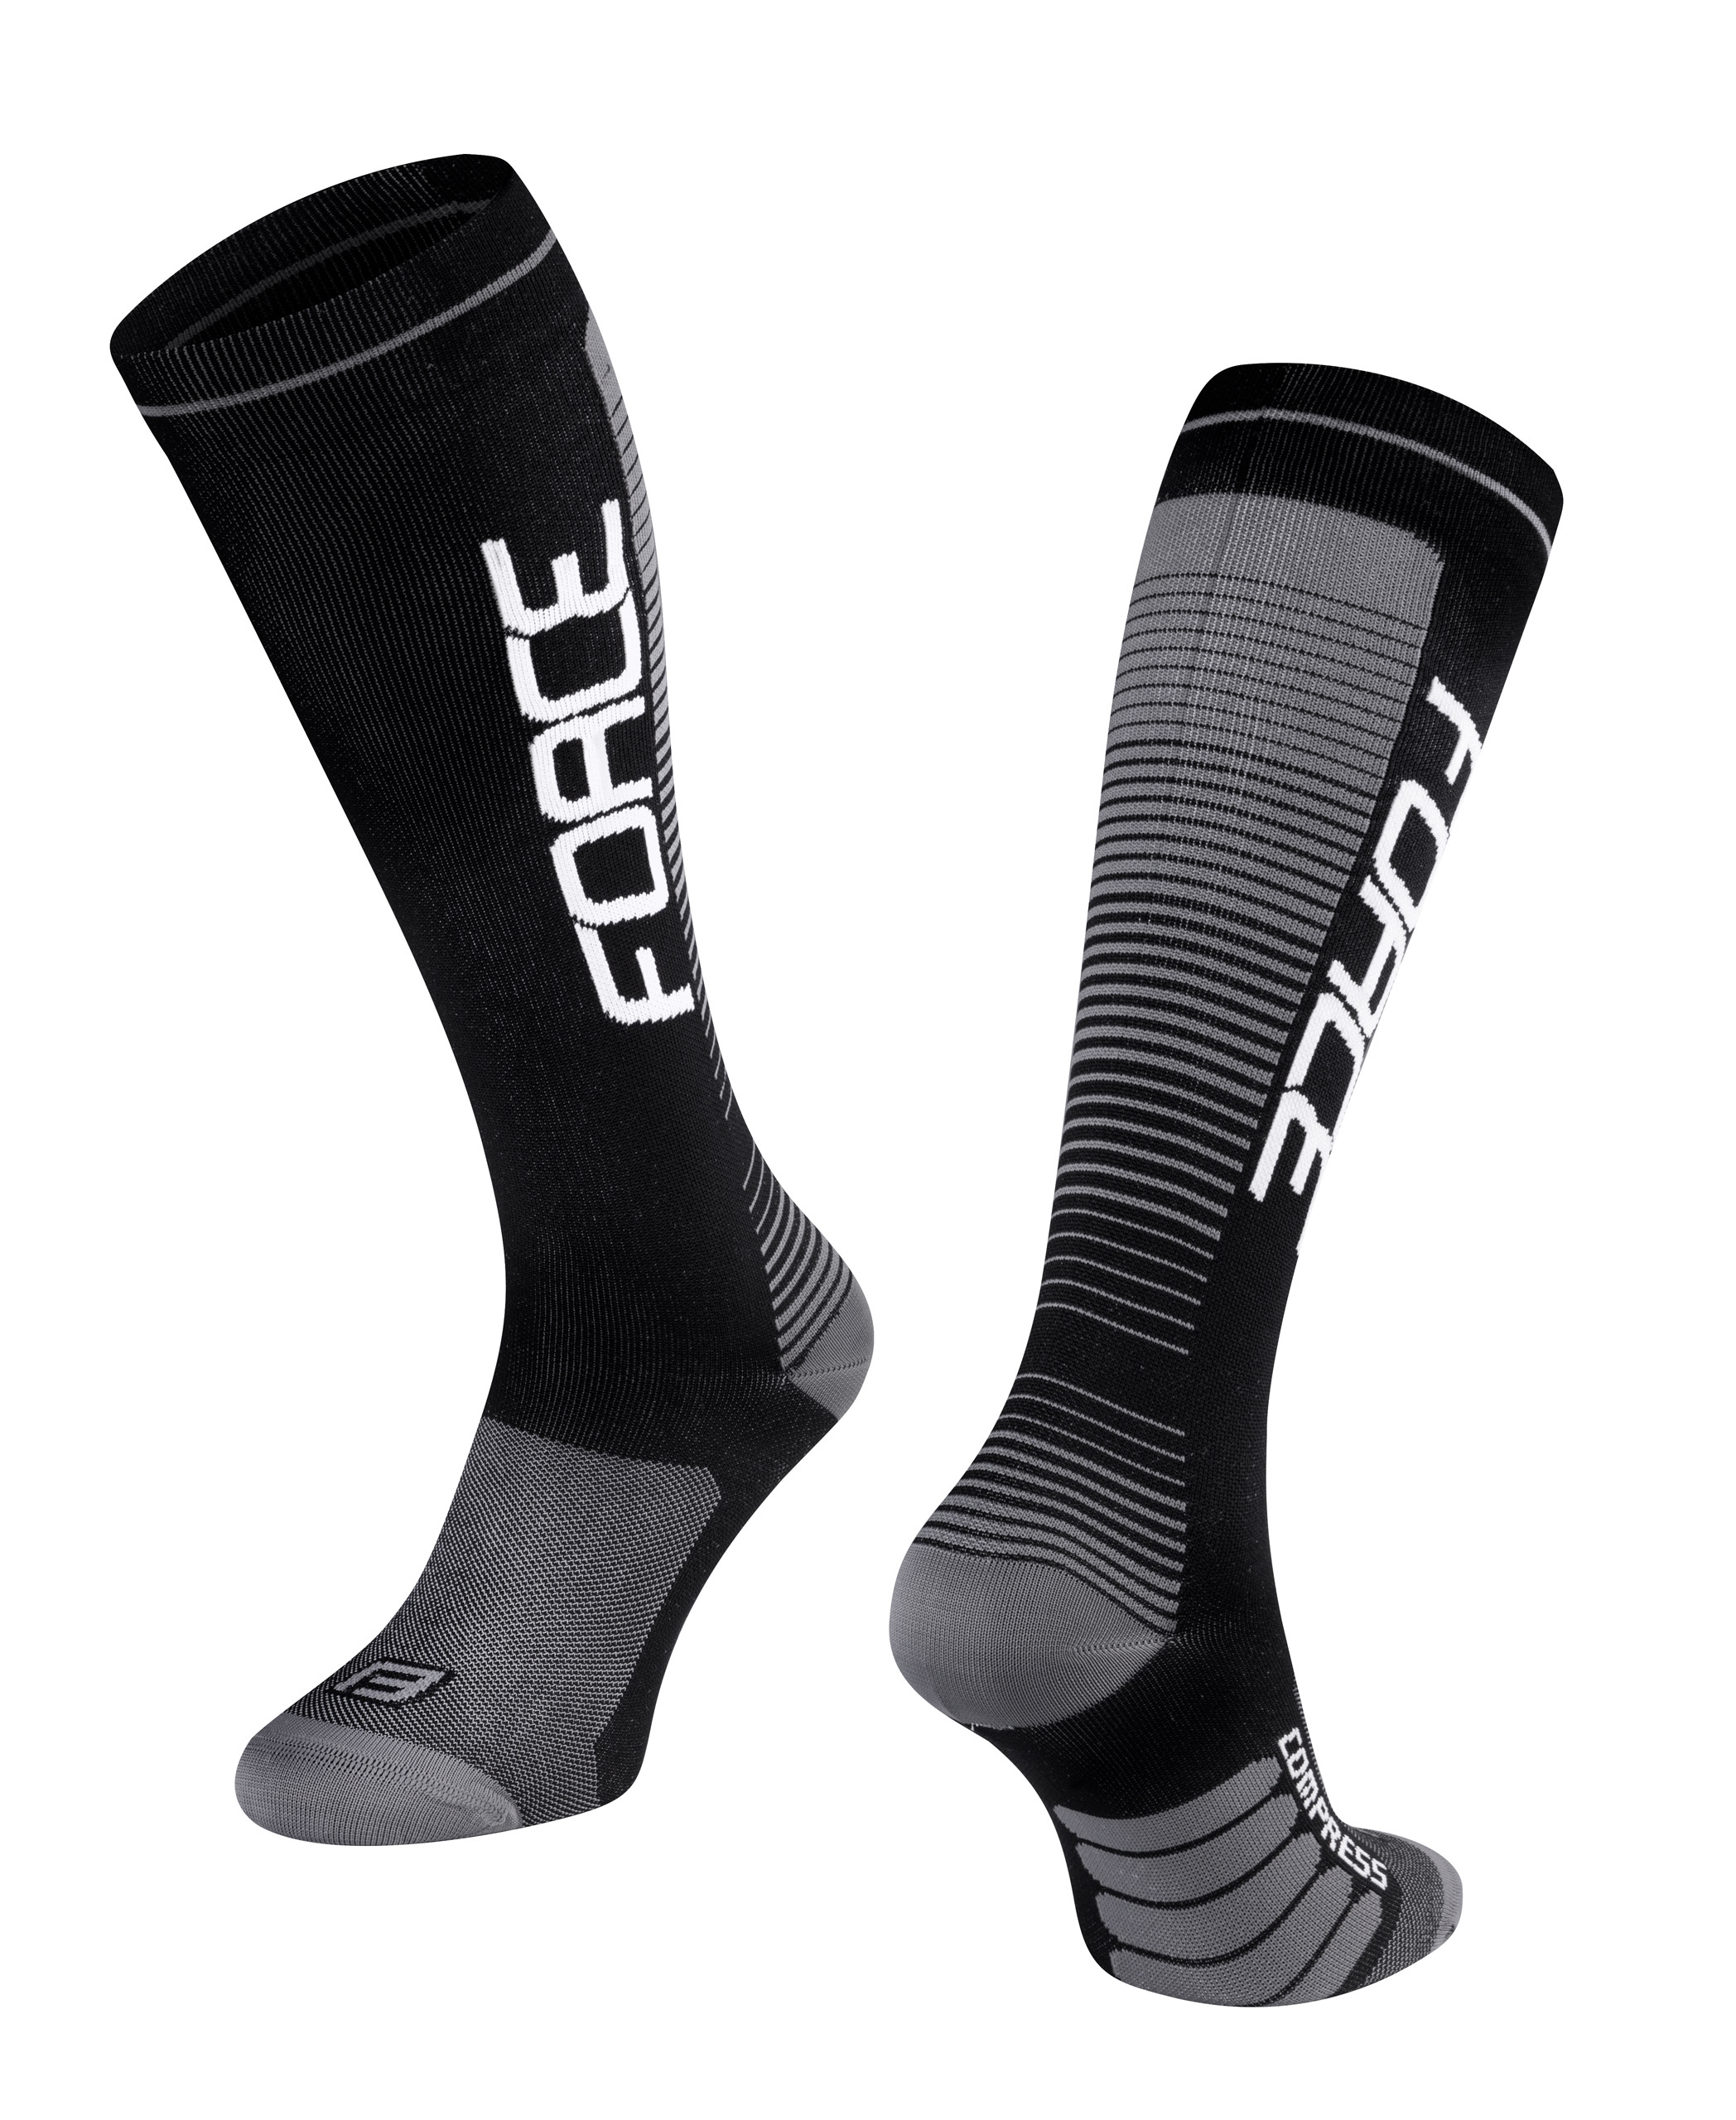 ponožky F COMPRESS, černo-šedé XXL/48-50